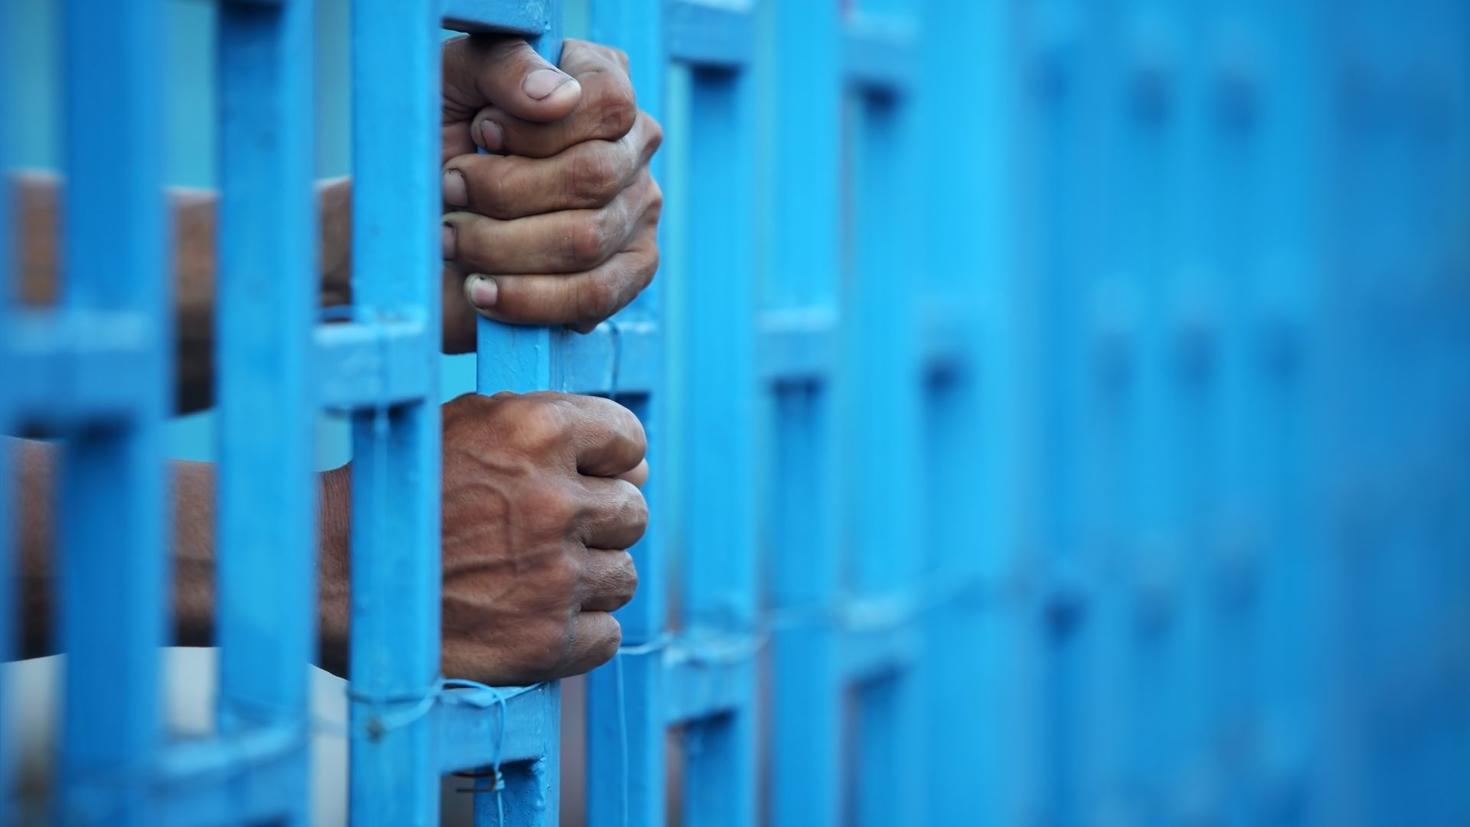 mains sur des barreaux d'un prison